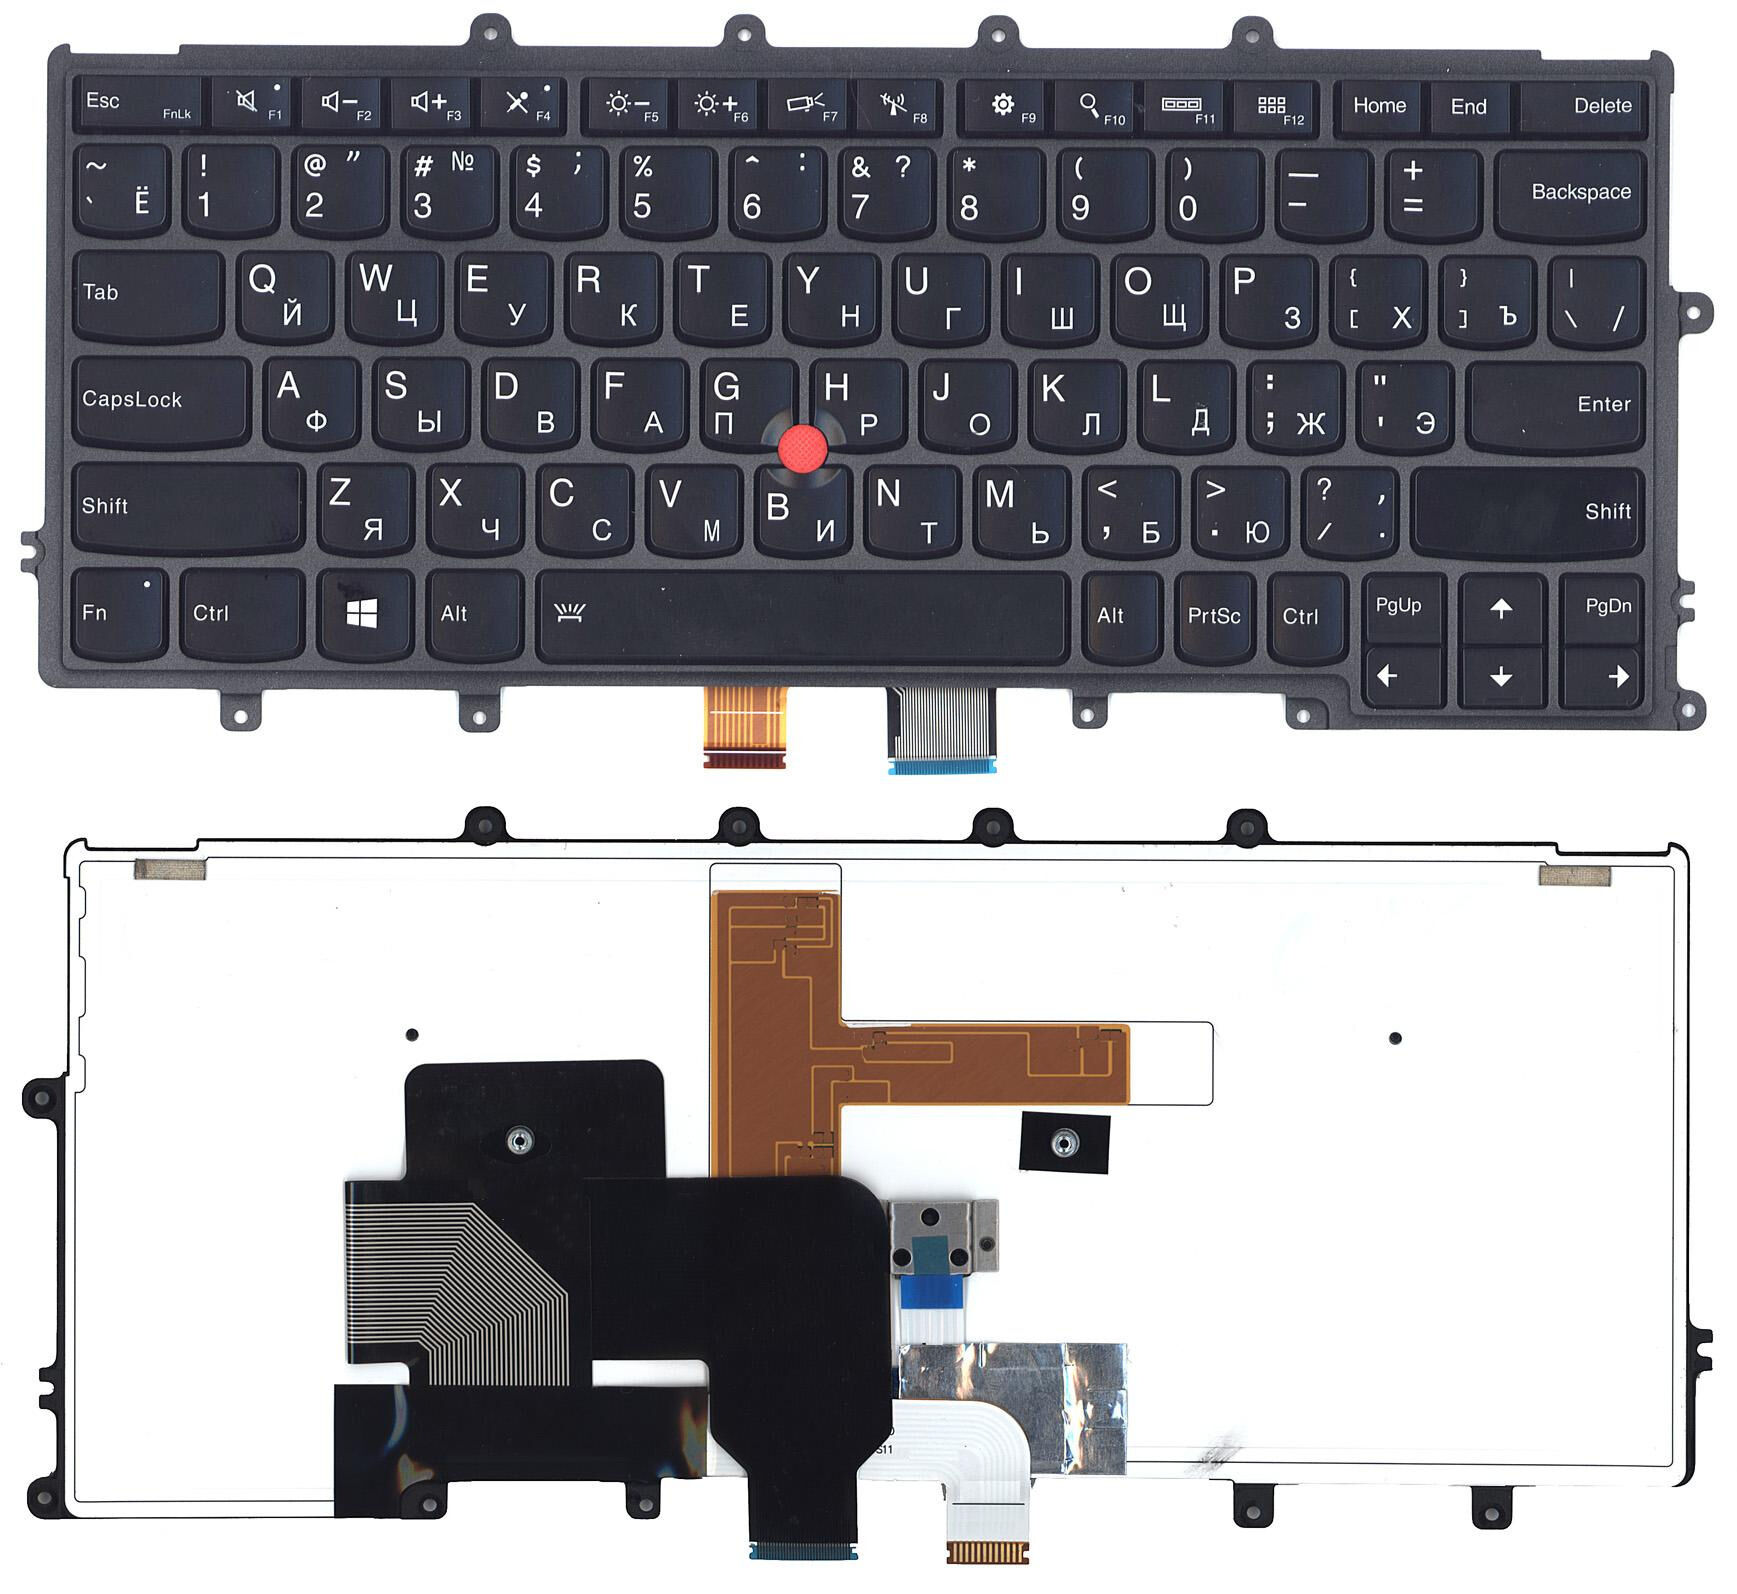 Клавиатура для ноутбука Lenovo ThinkPad X240 X250 X260 с подсветкой p/n: CX13XBL-83SU, CS13XBL-RUS